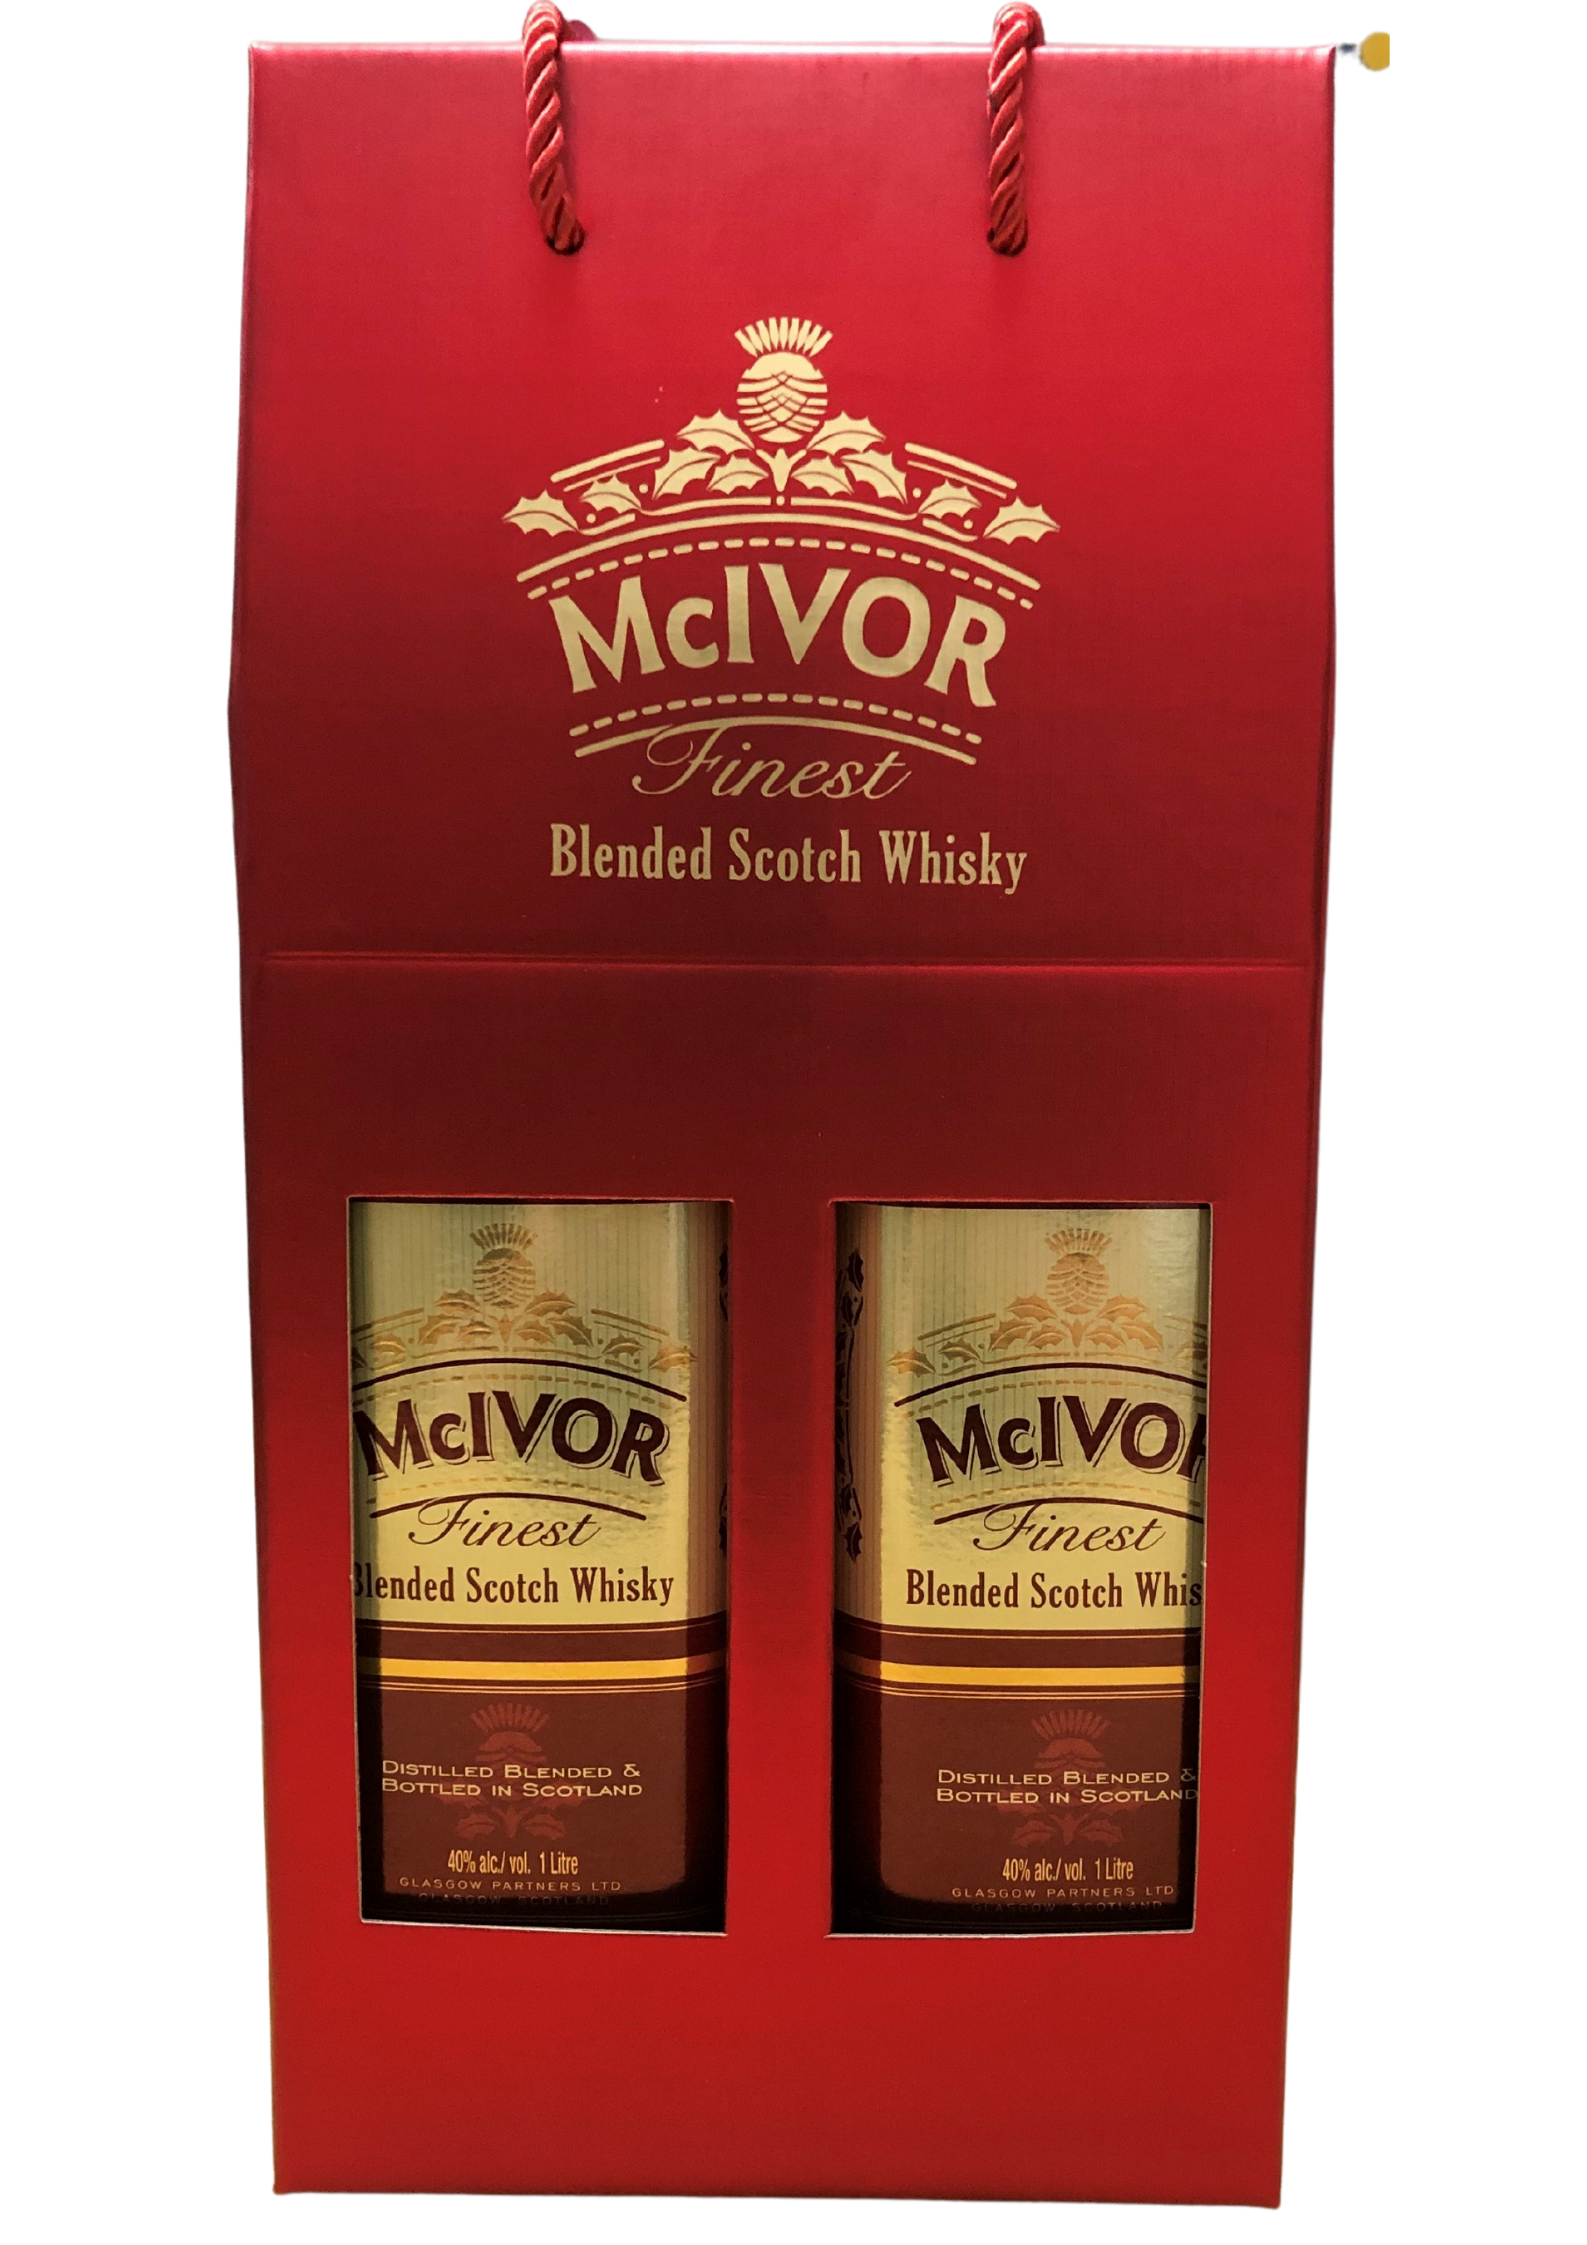 麥皇蘇格蘭紅貼威士忌 雙瓶禮盒裝 (1000ml x 2)